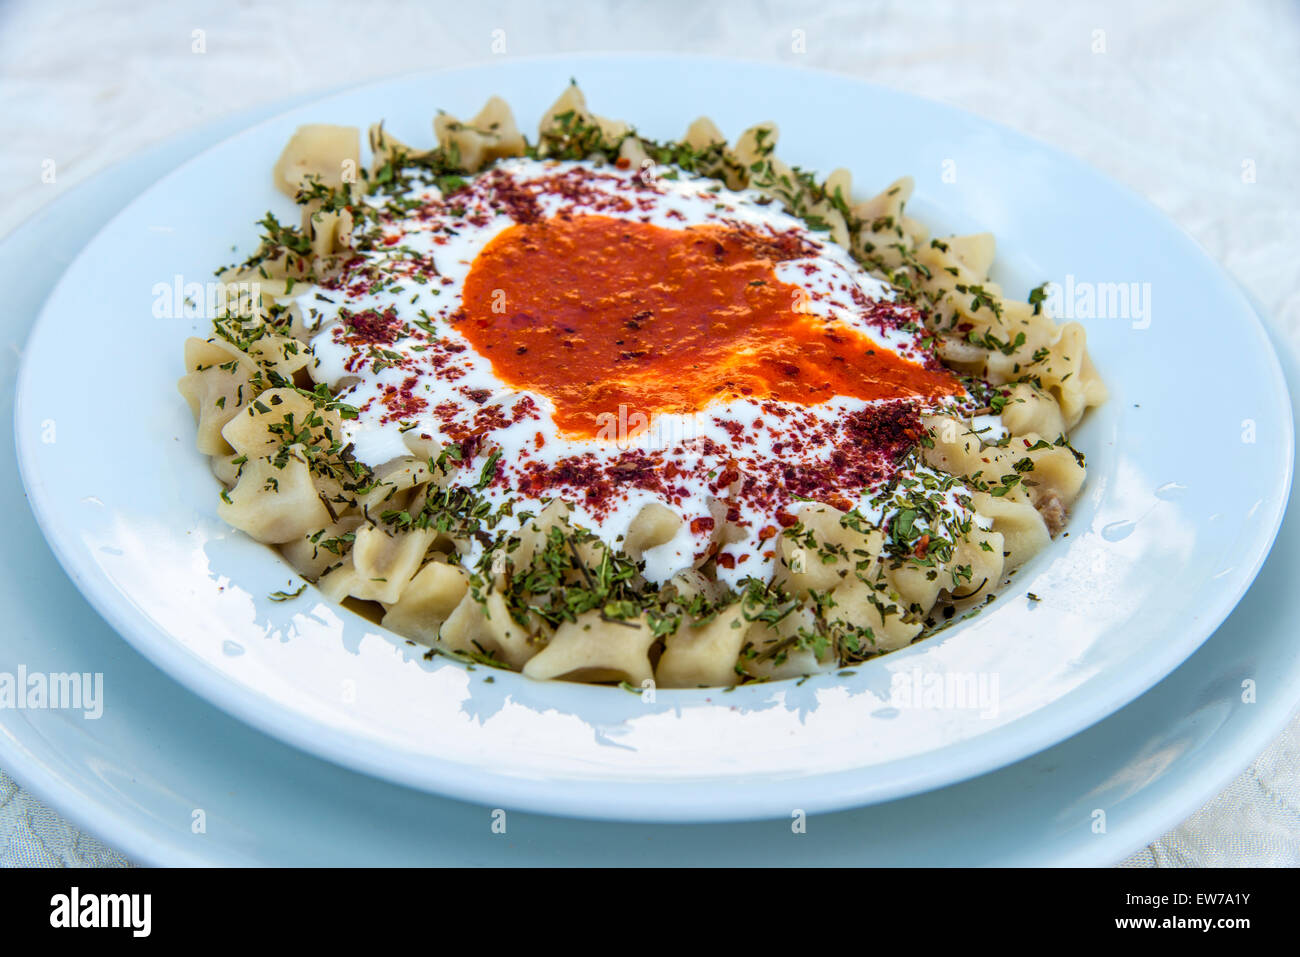 Manti tradizionali gnocchi o ravioli turchi è servita in un ristorante, Goreme, Cappadocia, Turchia Foto Stock